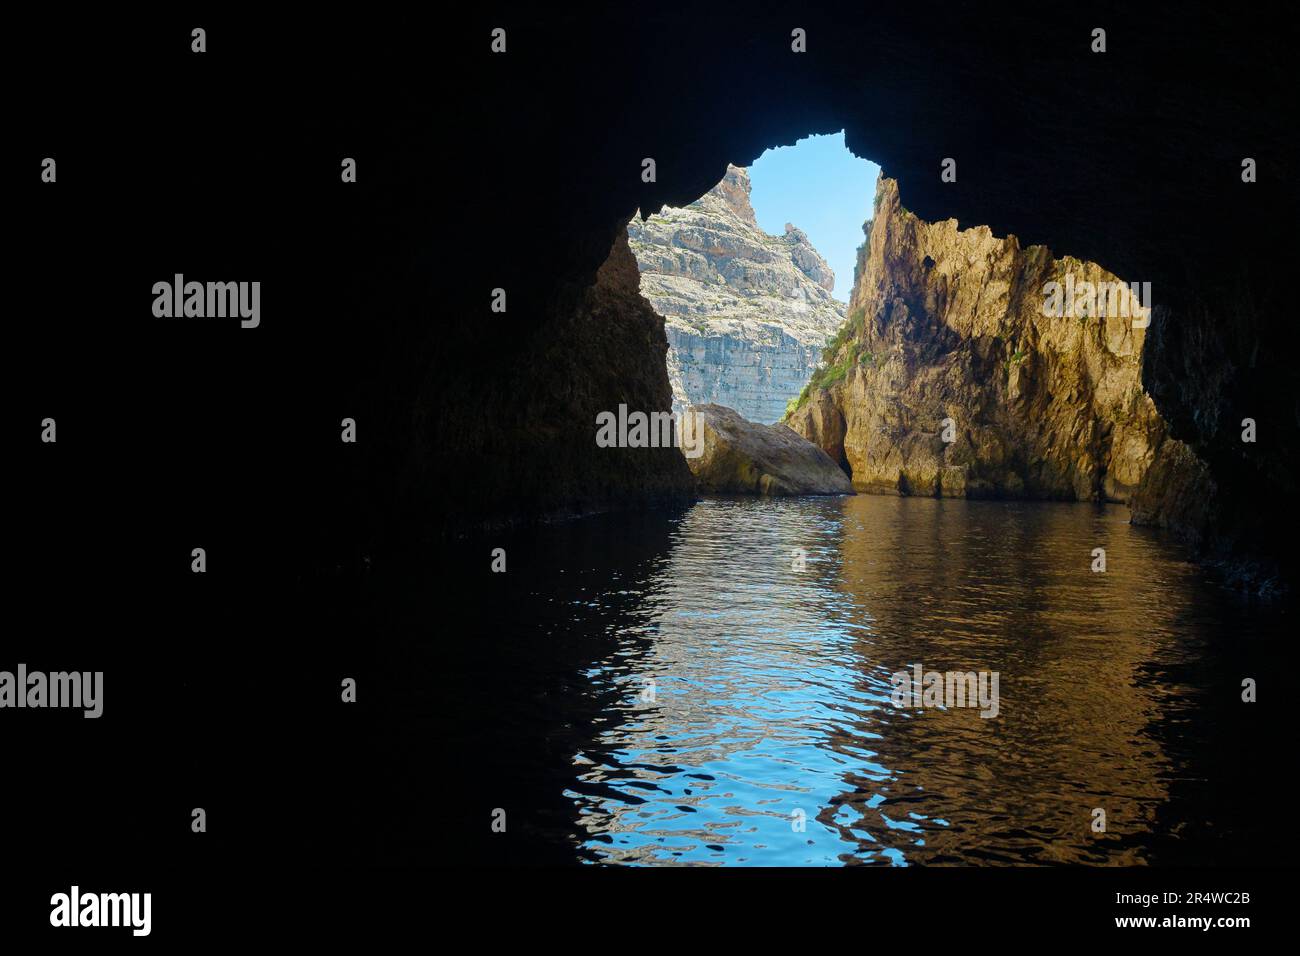 Vista dall'interno di una grotta marina, la Grotta Azzurra, un punto di riferimento locale sull'isola di Malta. Turismo, viaggi, vacanze e meraviglie naturali concetti Foto Stock